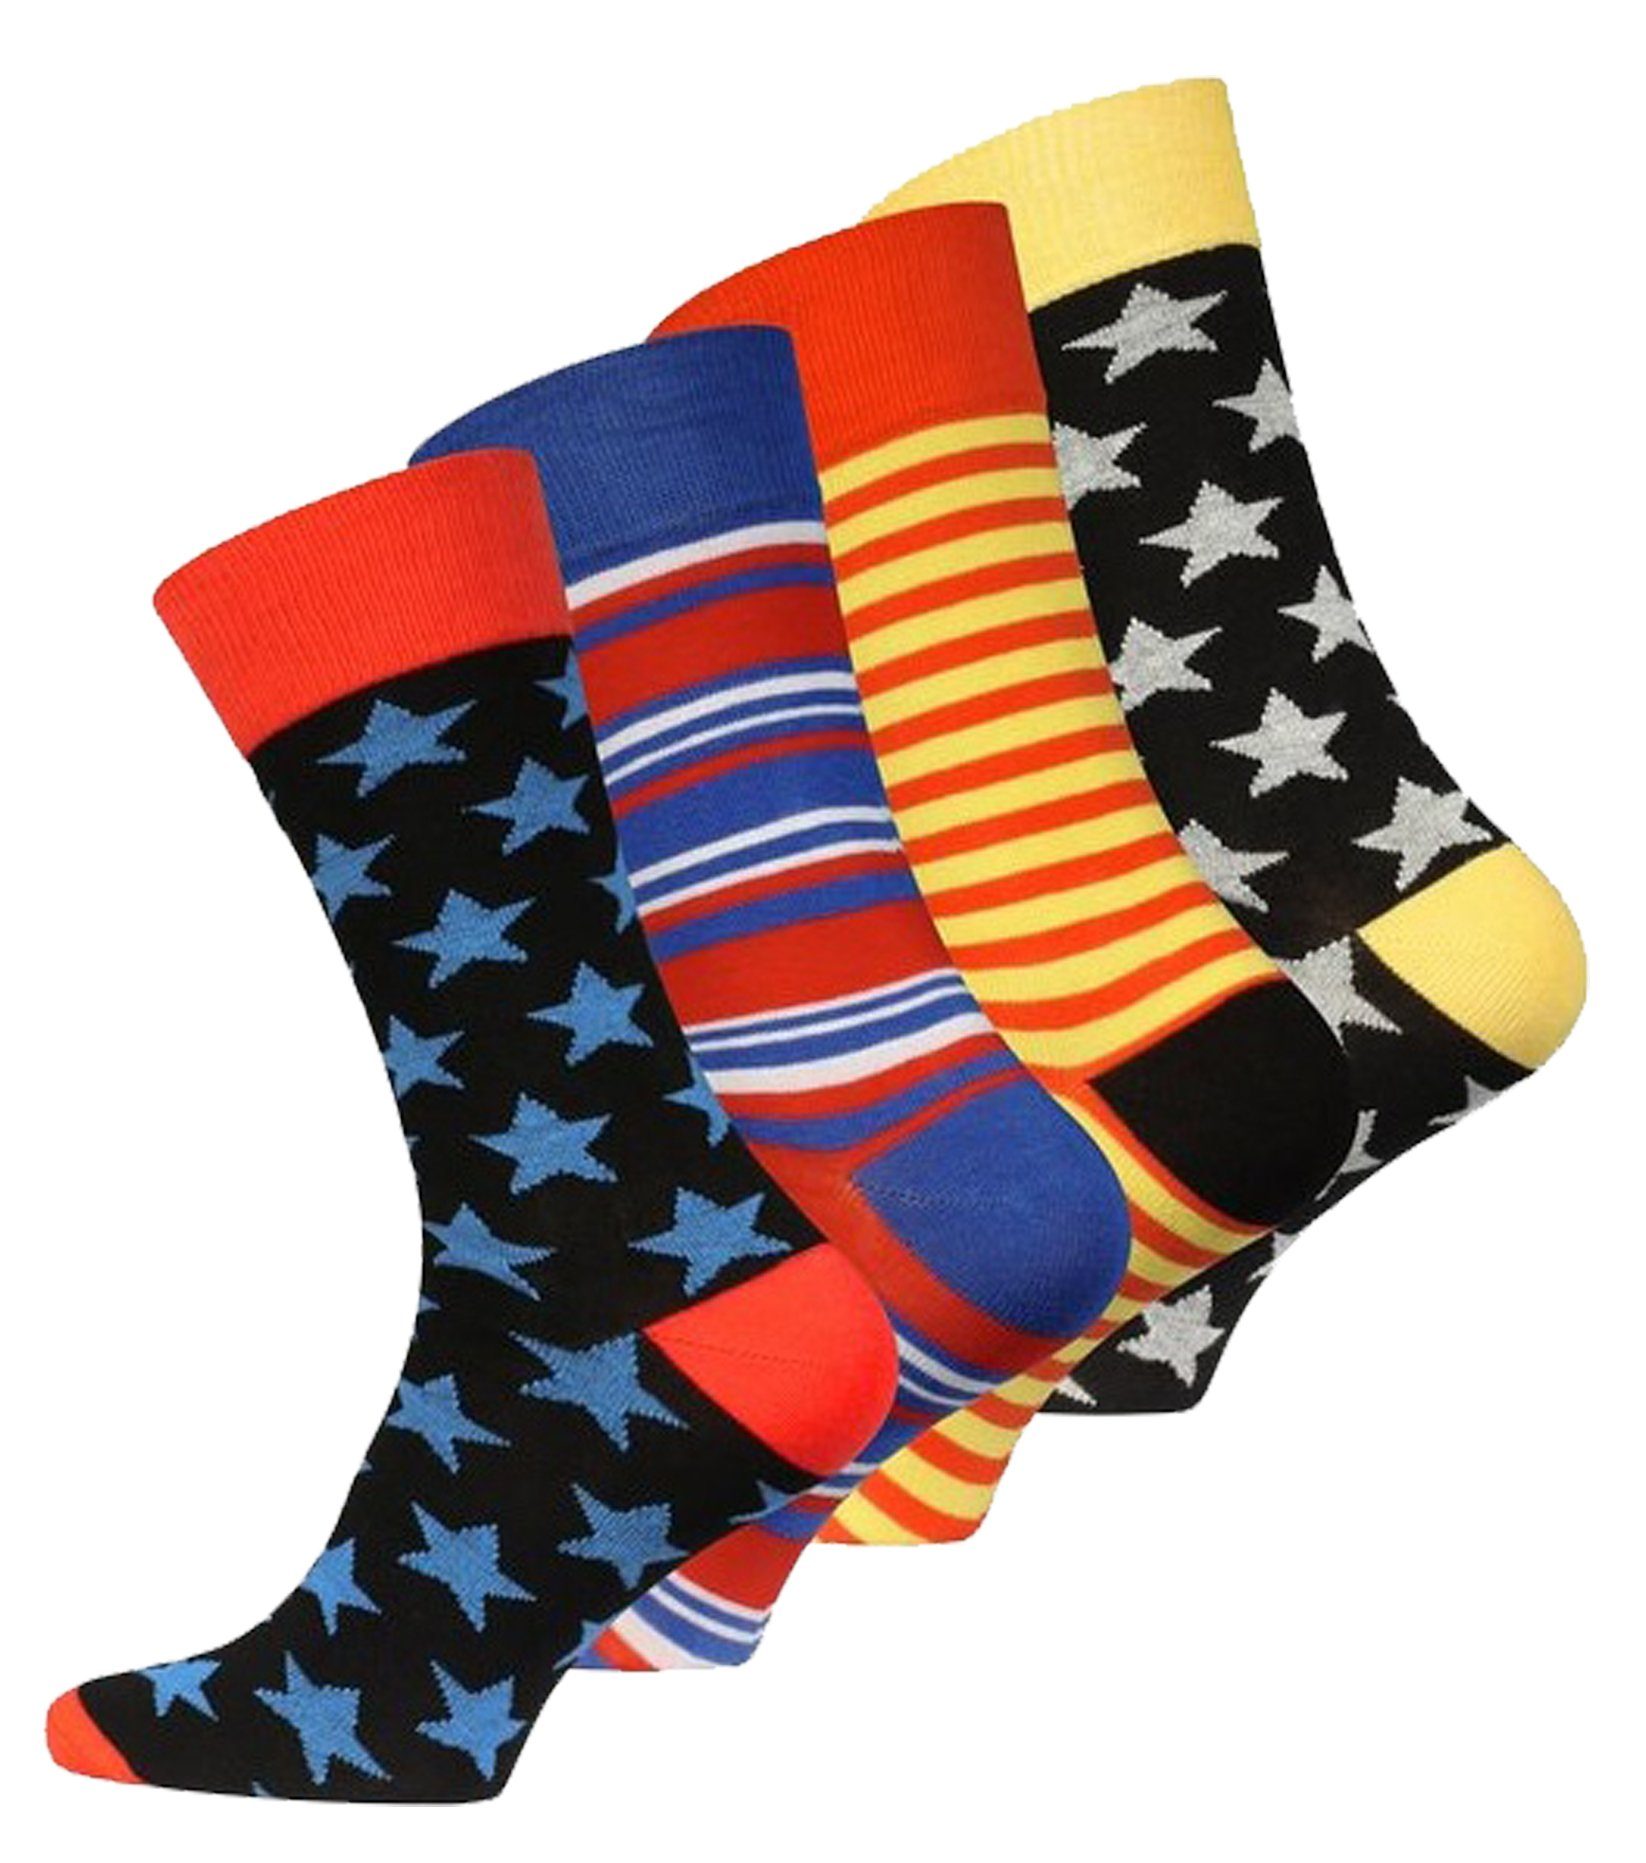 Vincent Creation® Socken "Stars and Stripes" (4-Paar) in angenehmer Baumwollqualität | Socken